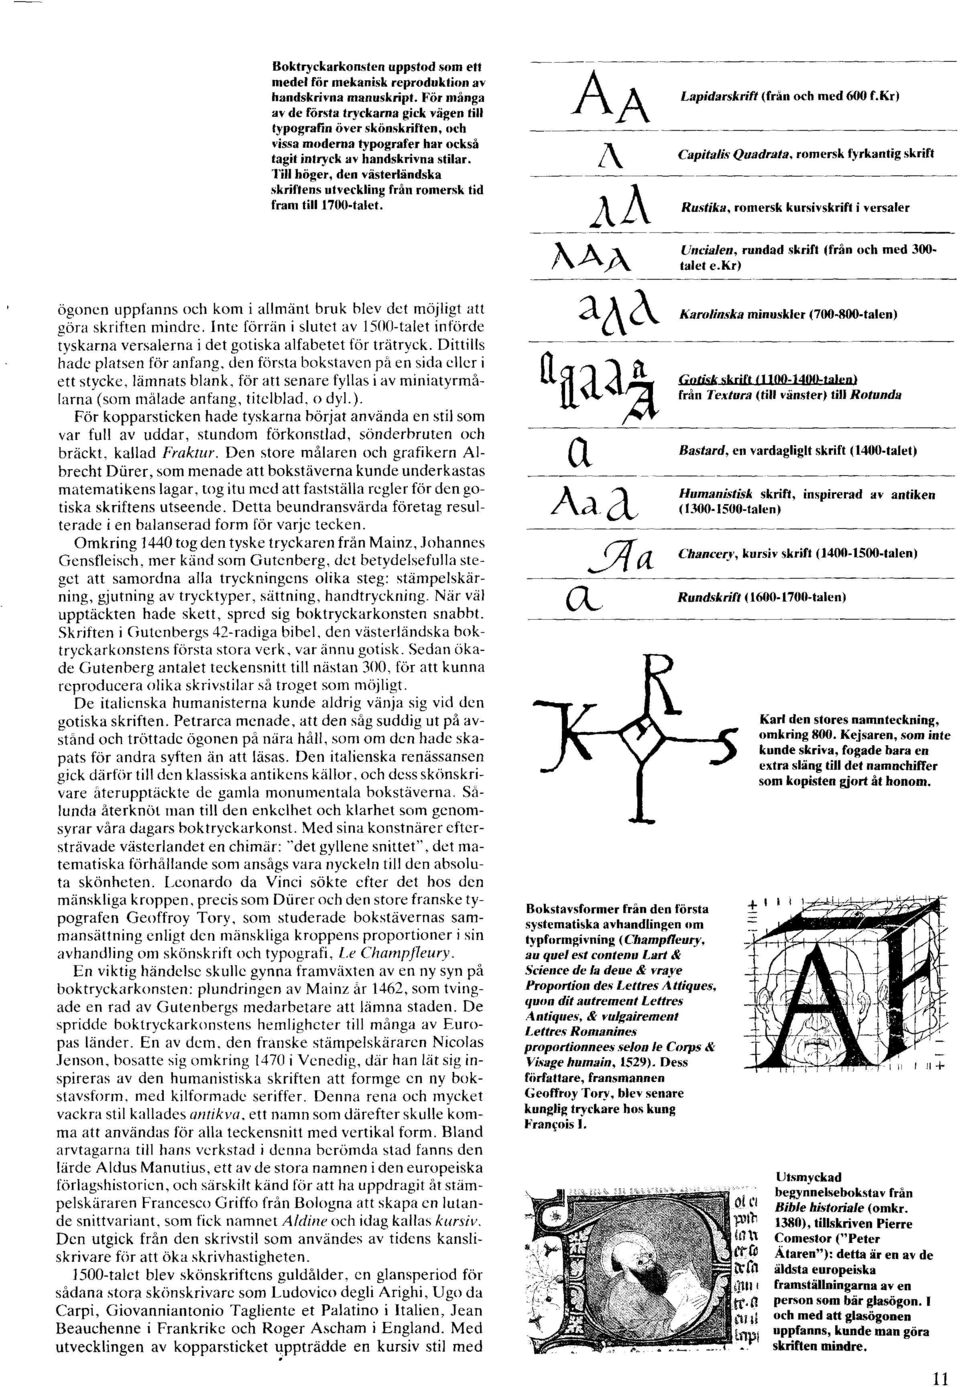 Till hoger, den vasterlandska skriftens utveckling frin romersk tid fram till 1700-talet. A A A AA Rustika, h A~ Lapidarskrift (fran och rned 600 f.